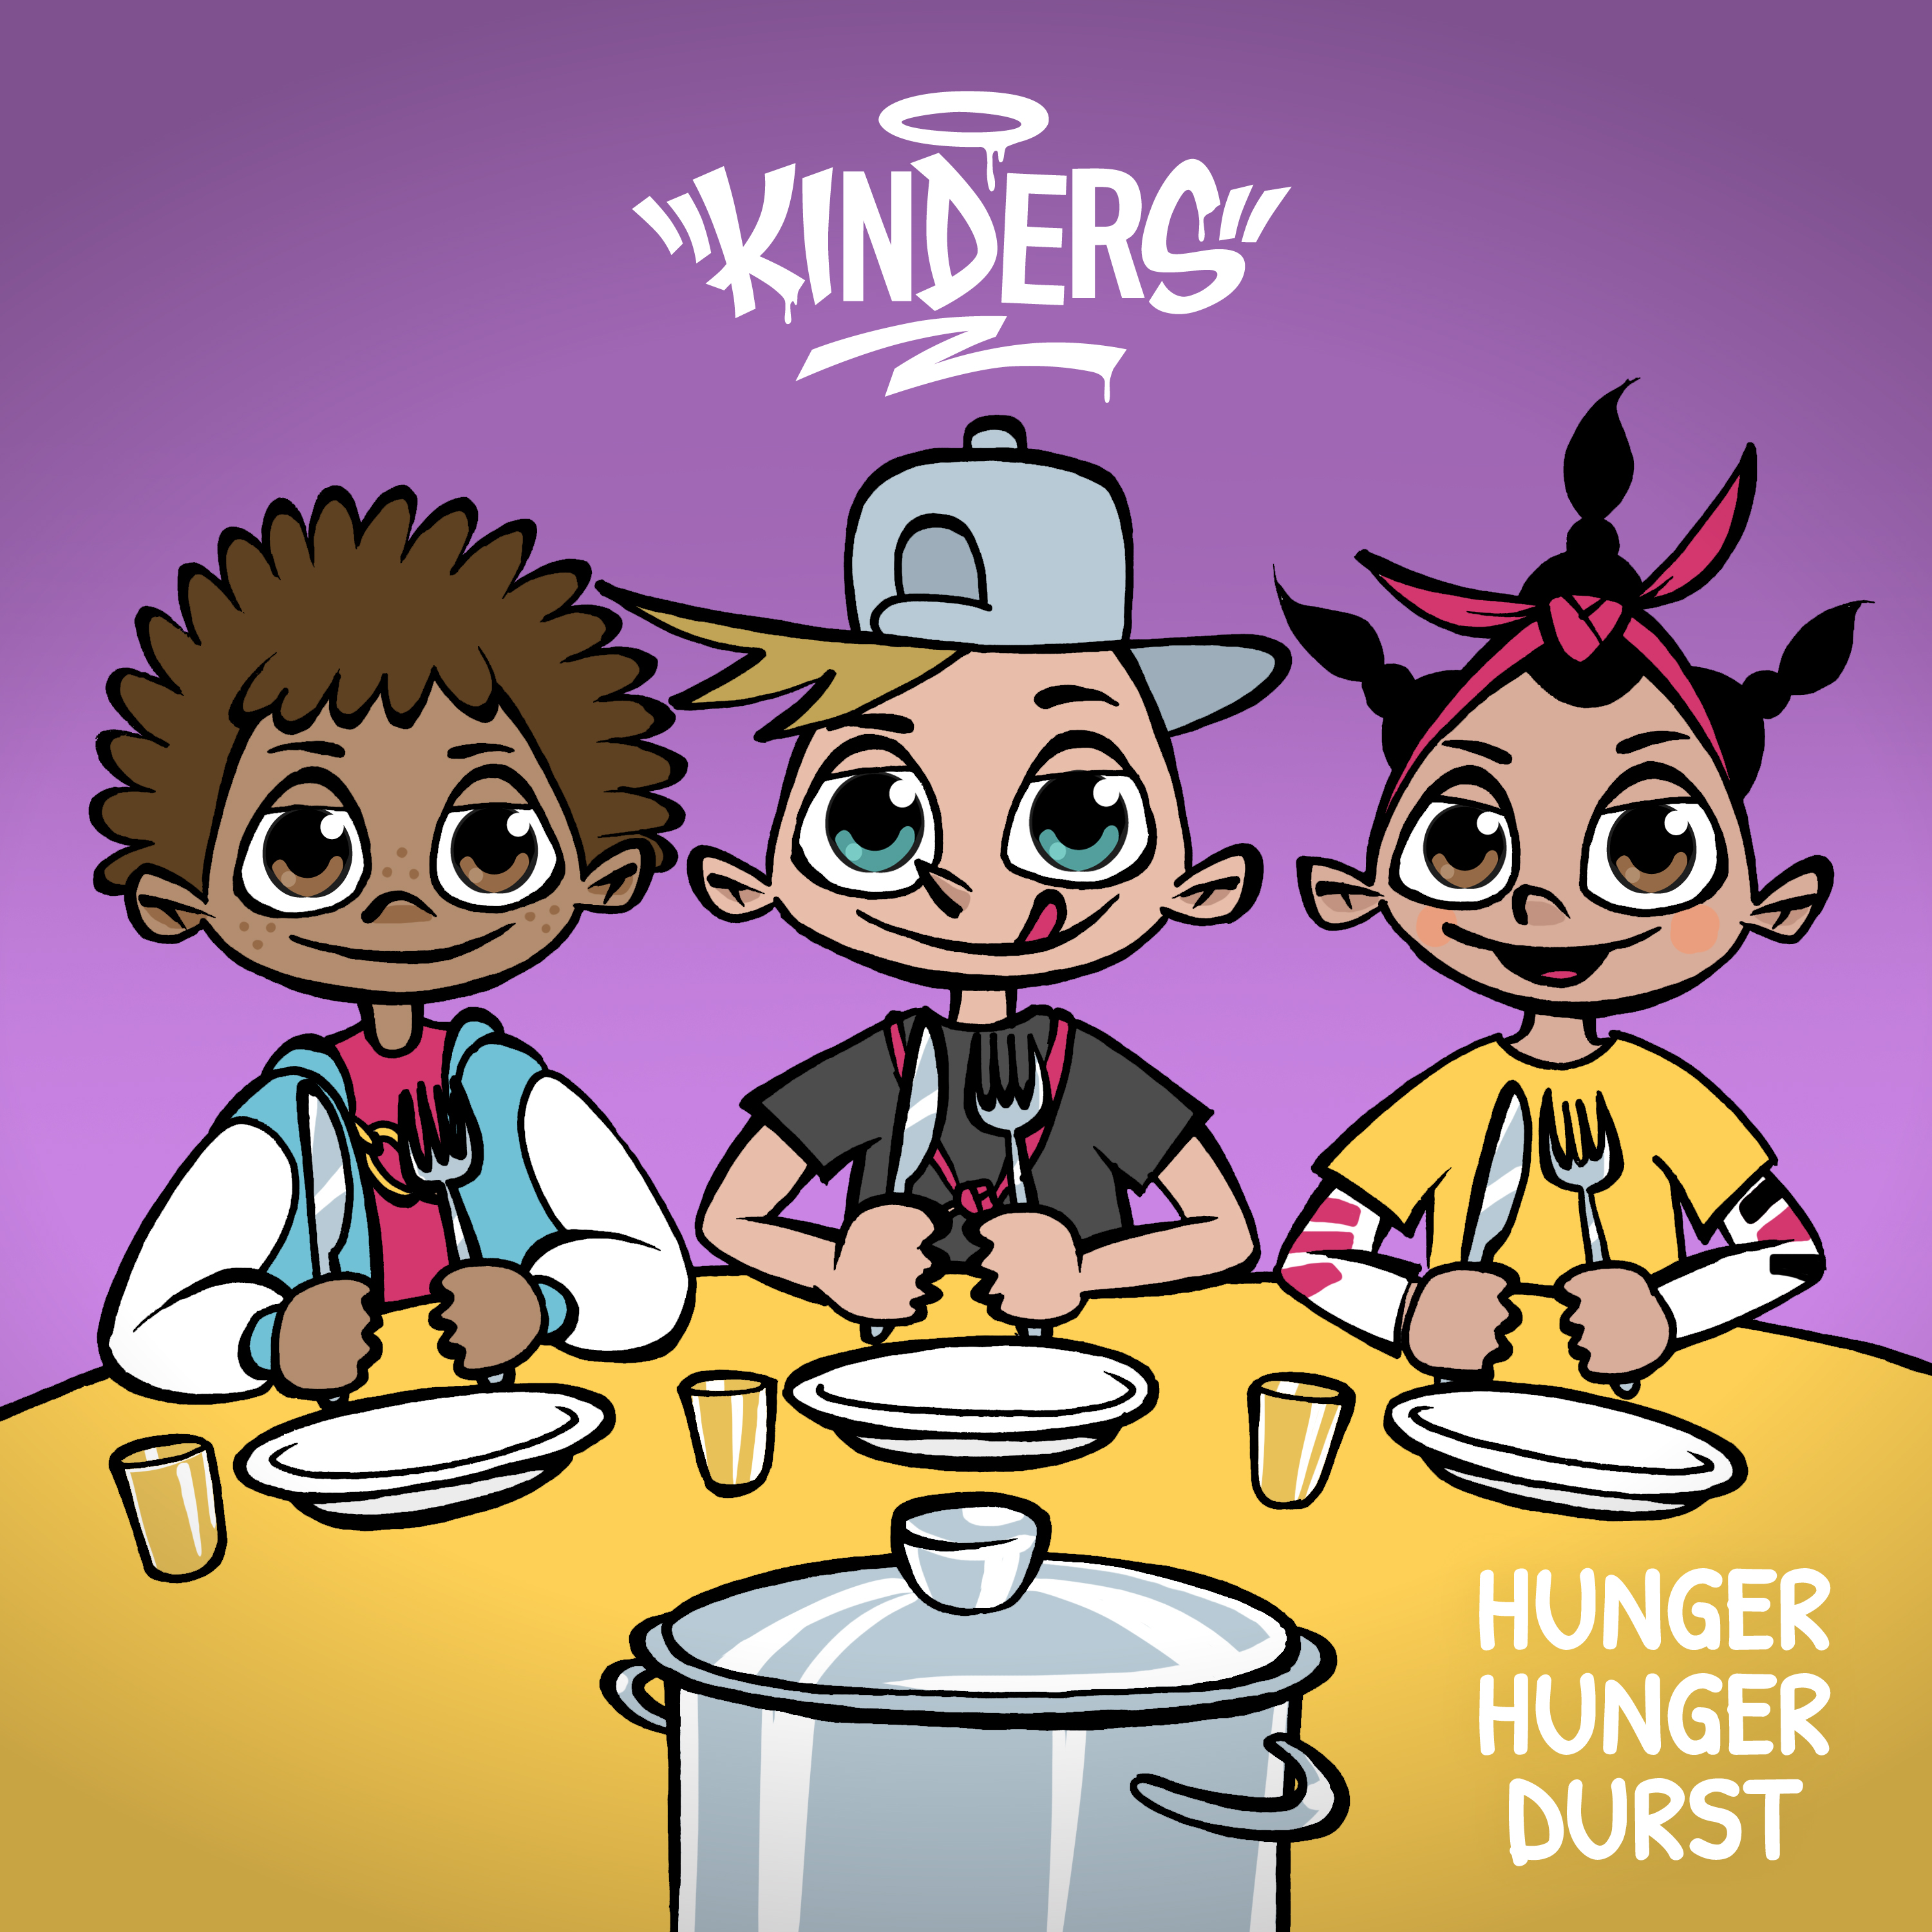 KINDERS: Hunger, Hunger, Durst